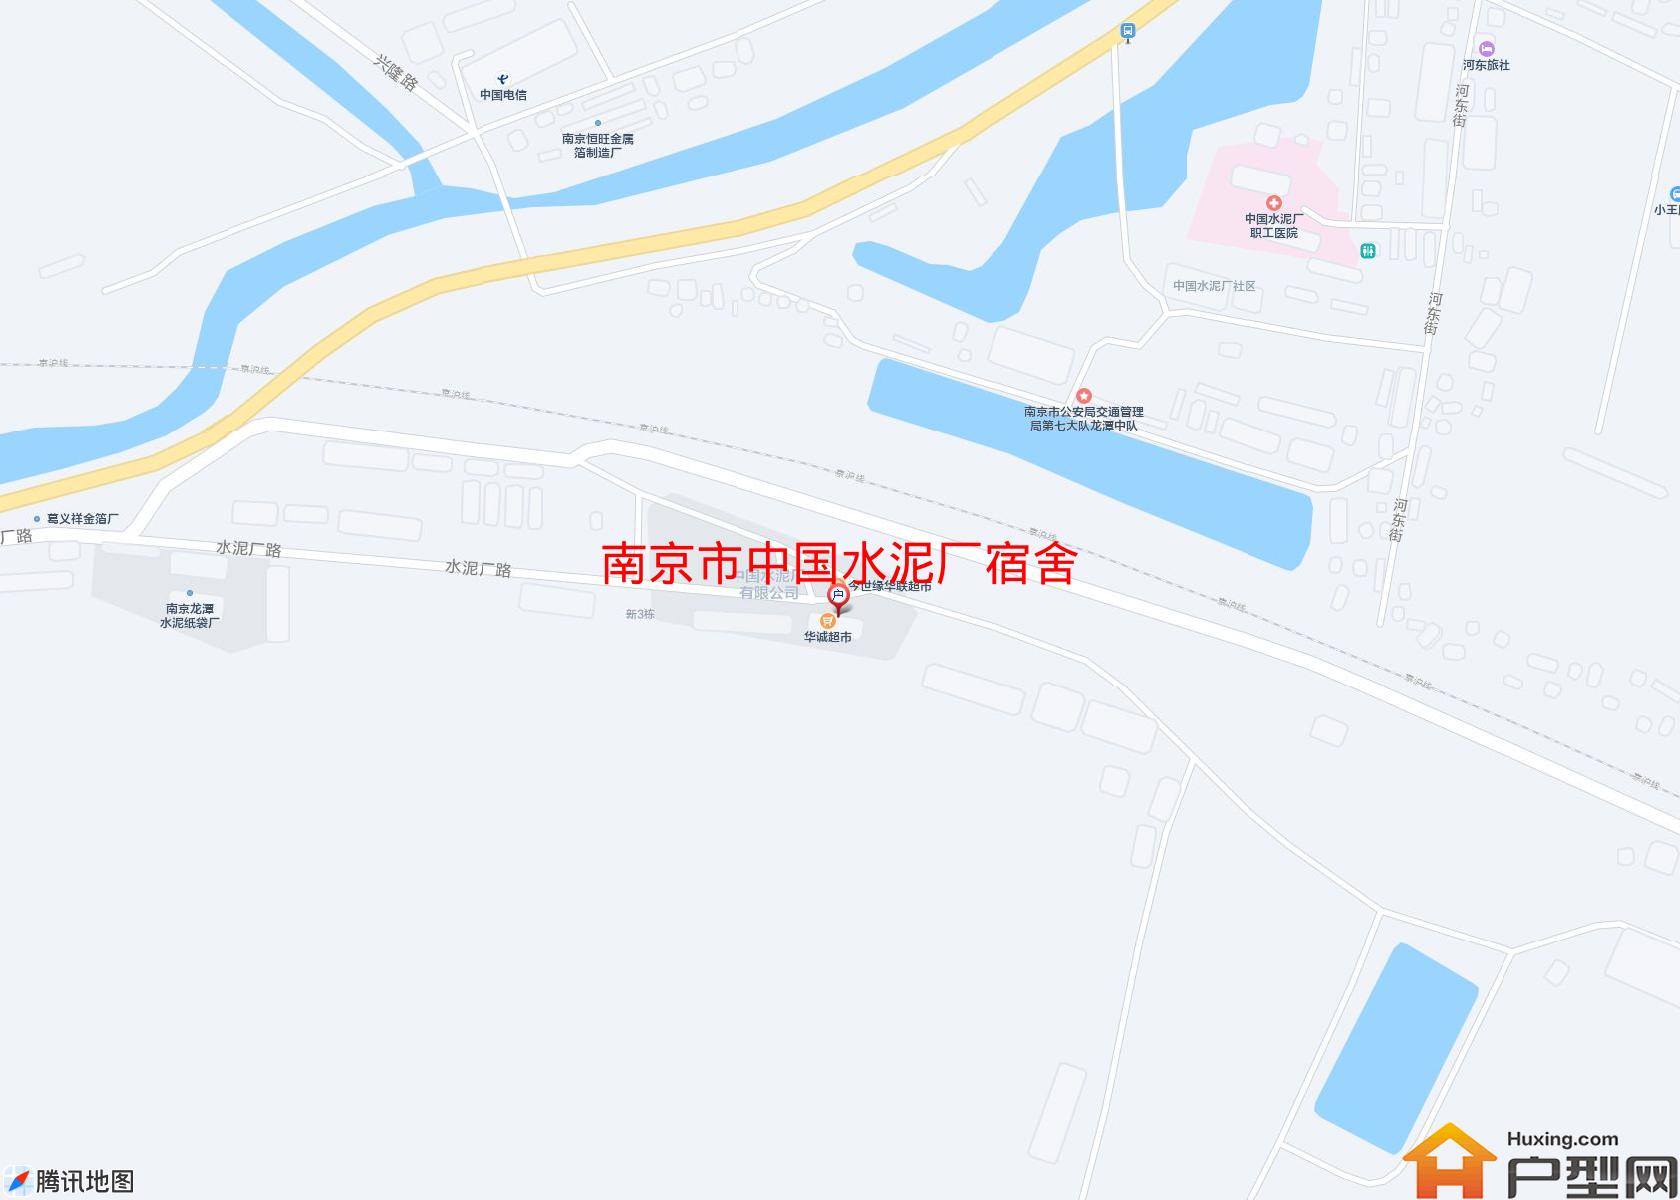 中国水泥厂宿舍小区 - 户型网